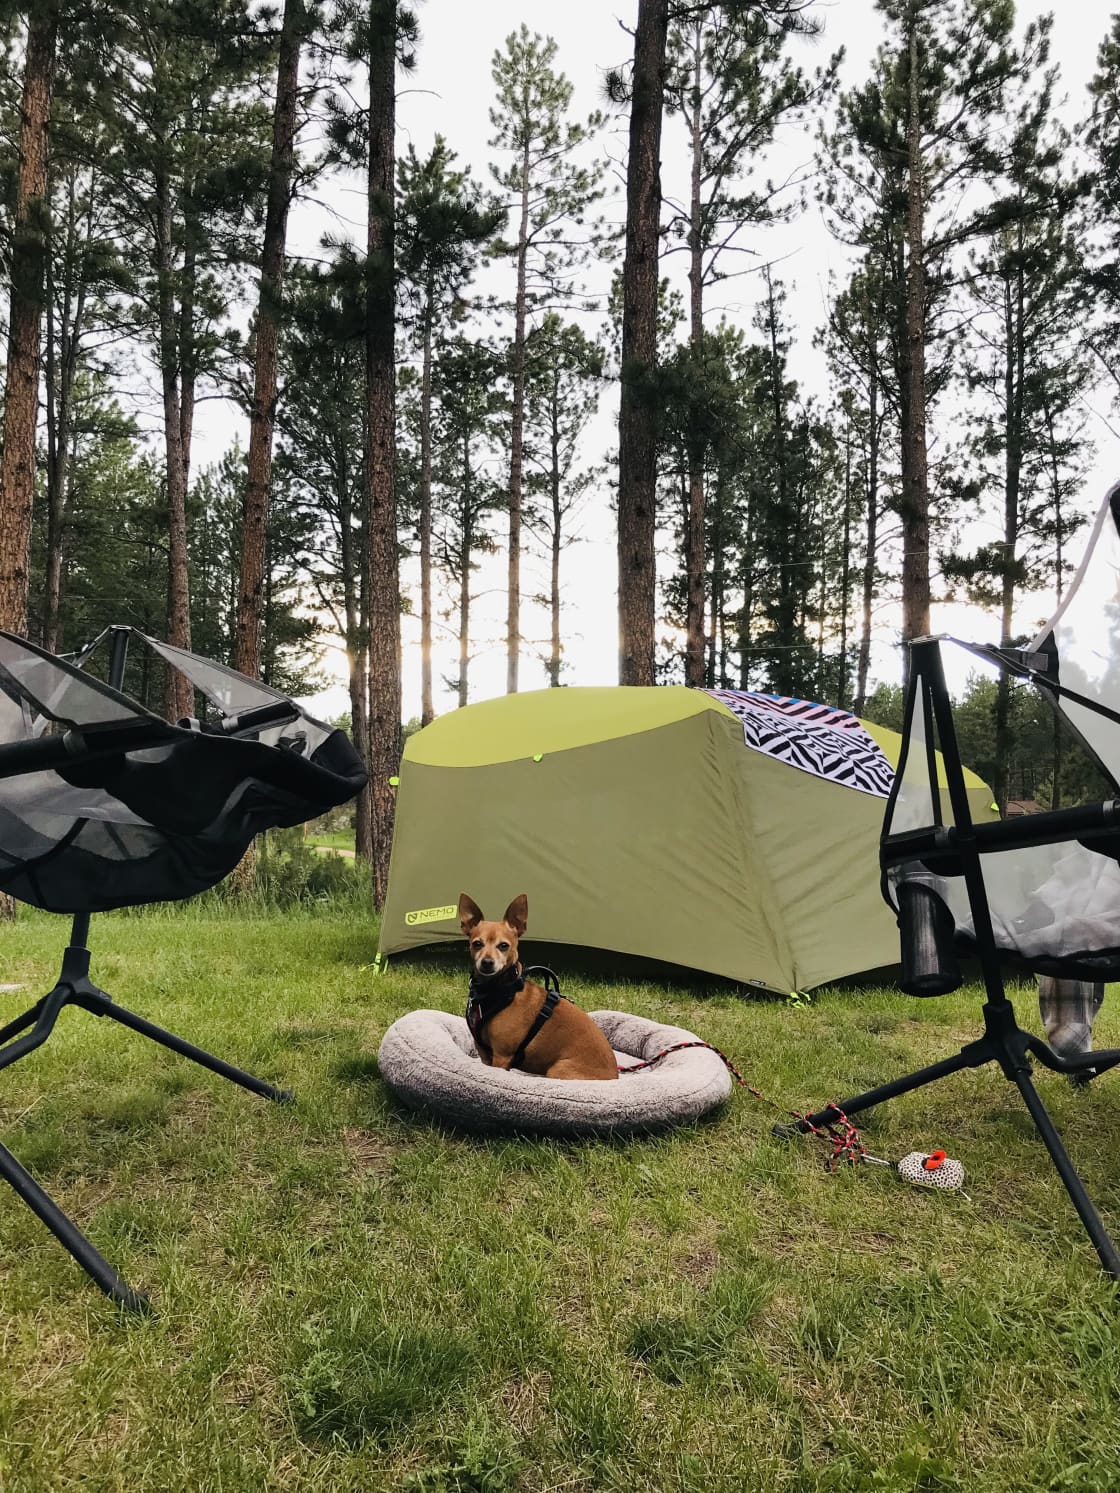 Our cozy tent spot. 